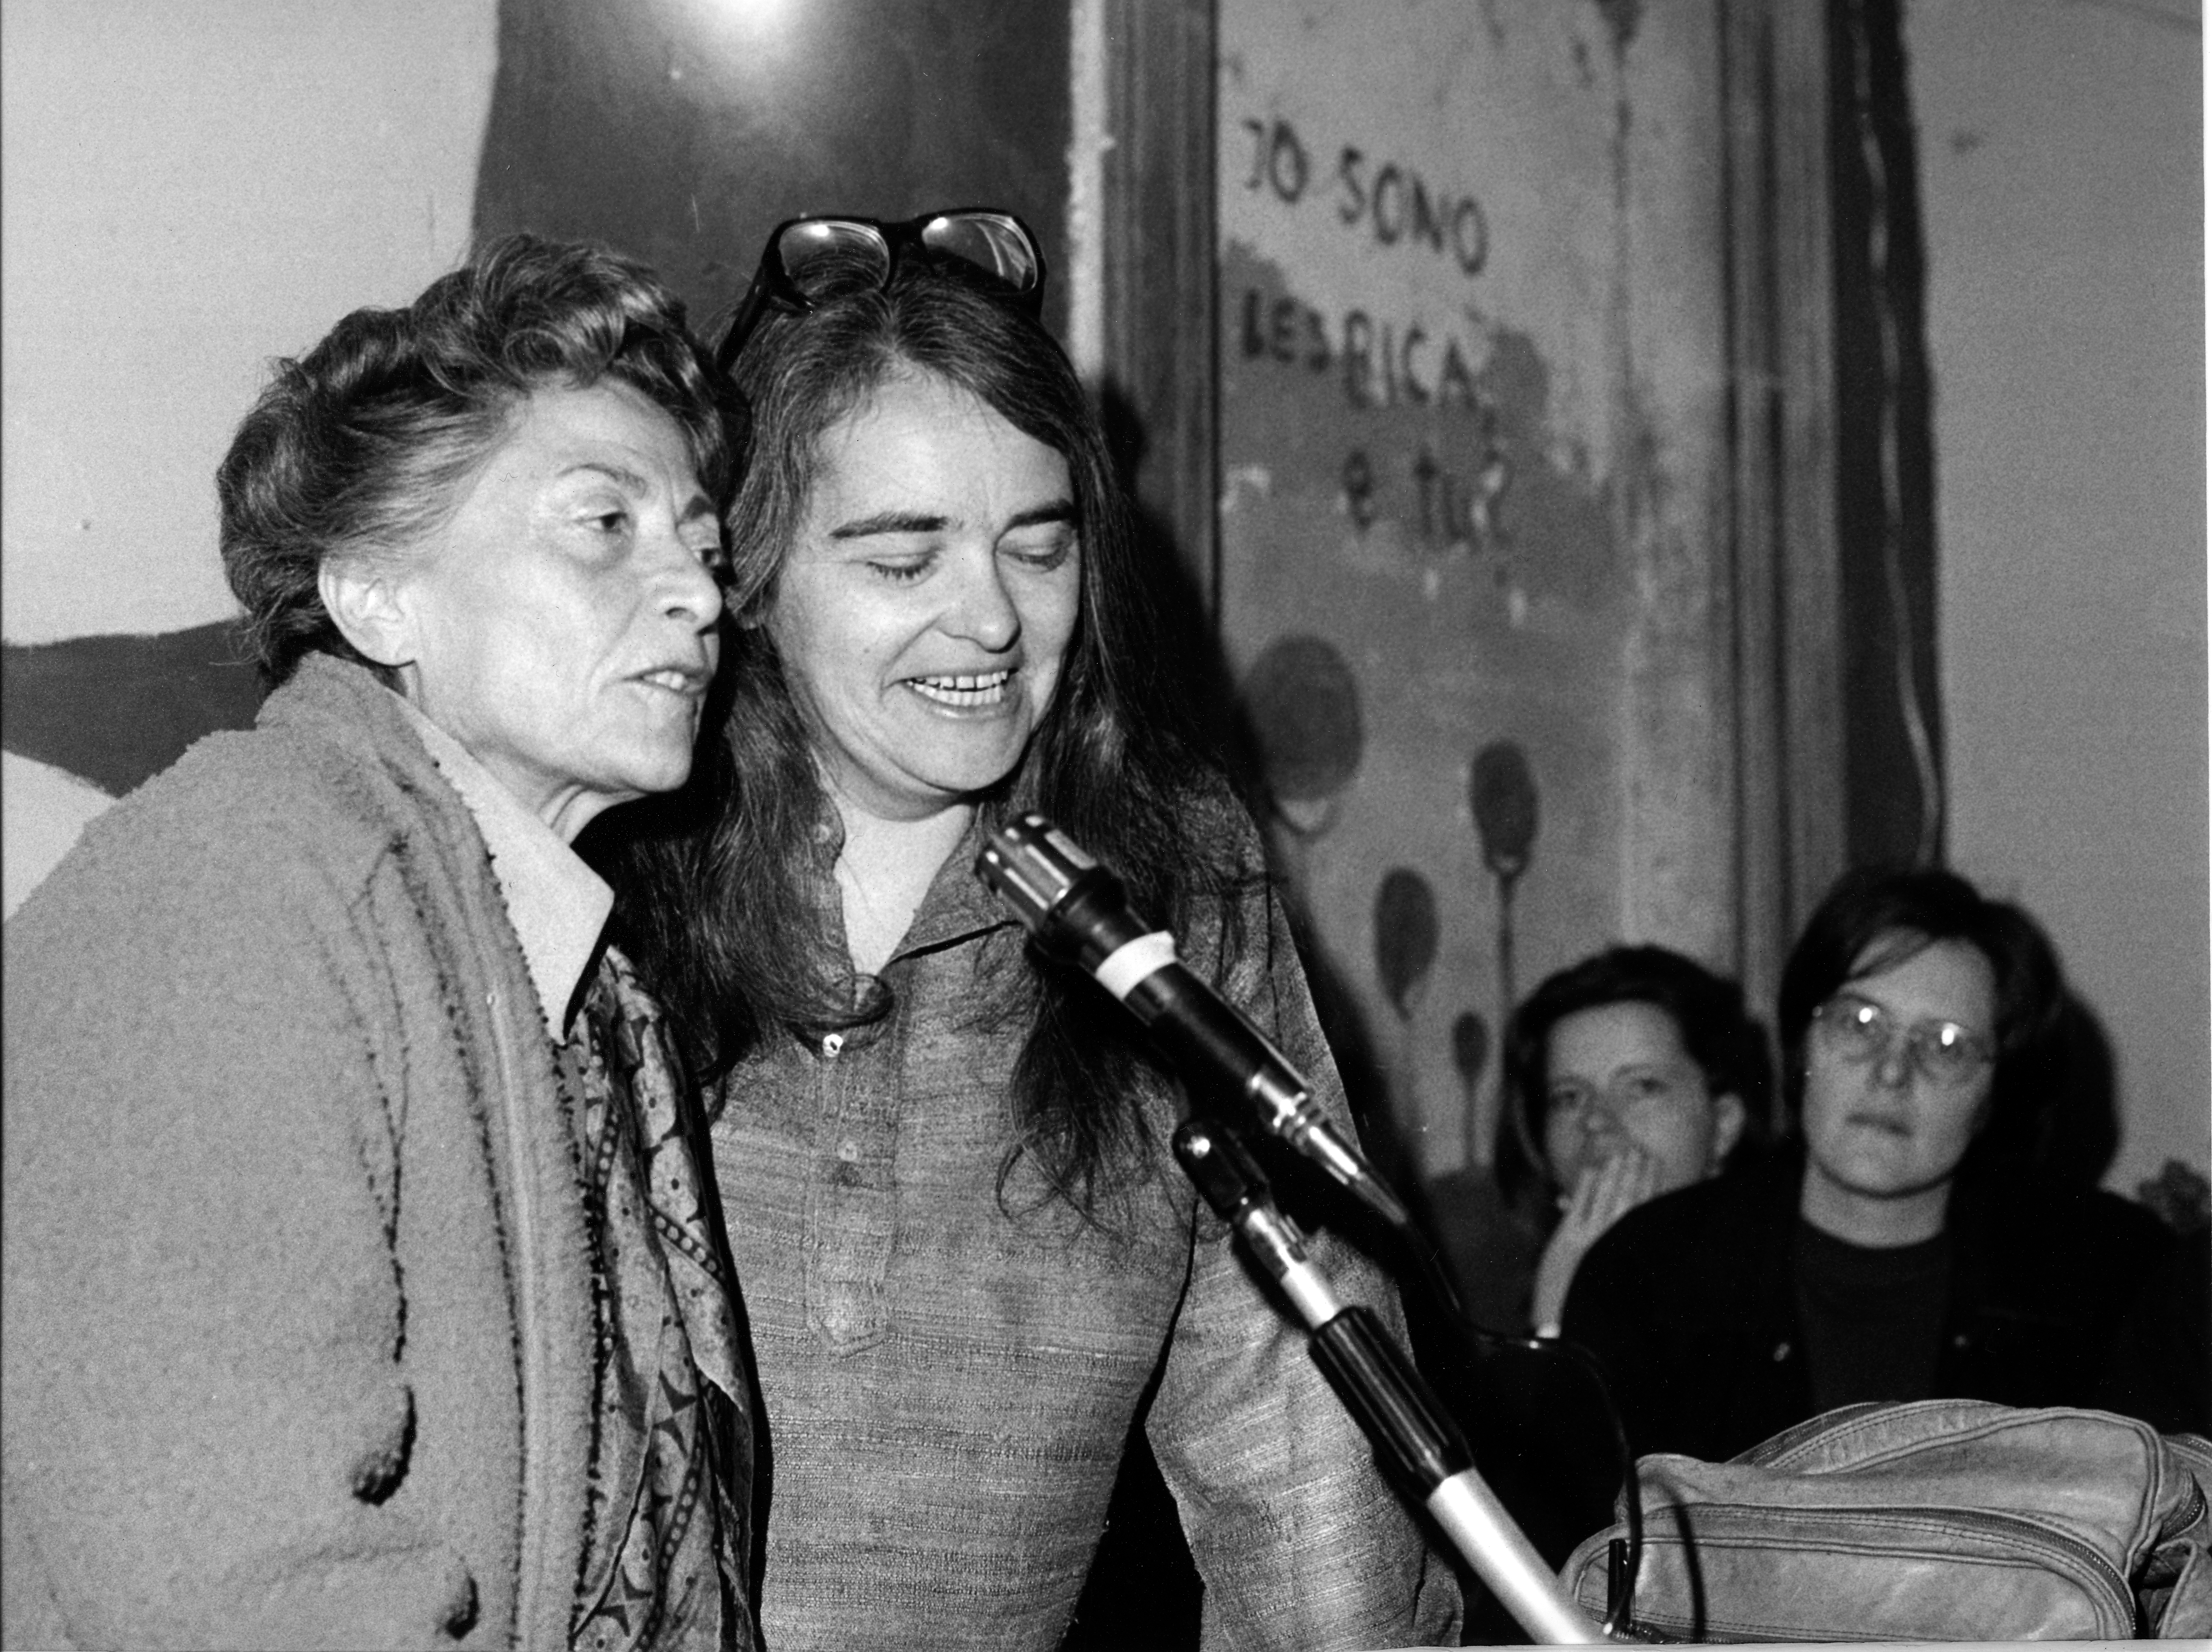 Autunno 1979 - Conferenza stampa di Kate Millet sulle donne in Iran, autrice Marzia Bollati
[Foto per gentile concessione di Archivia, Roma]